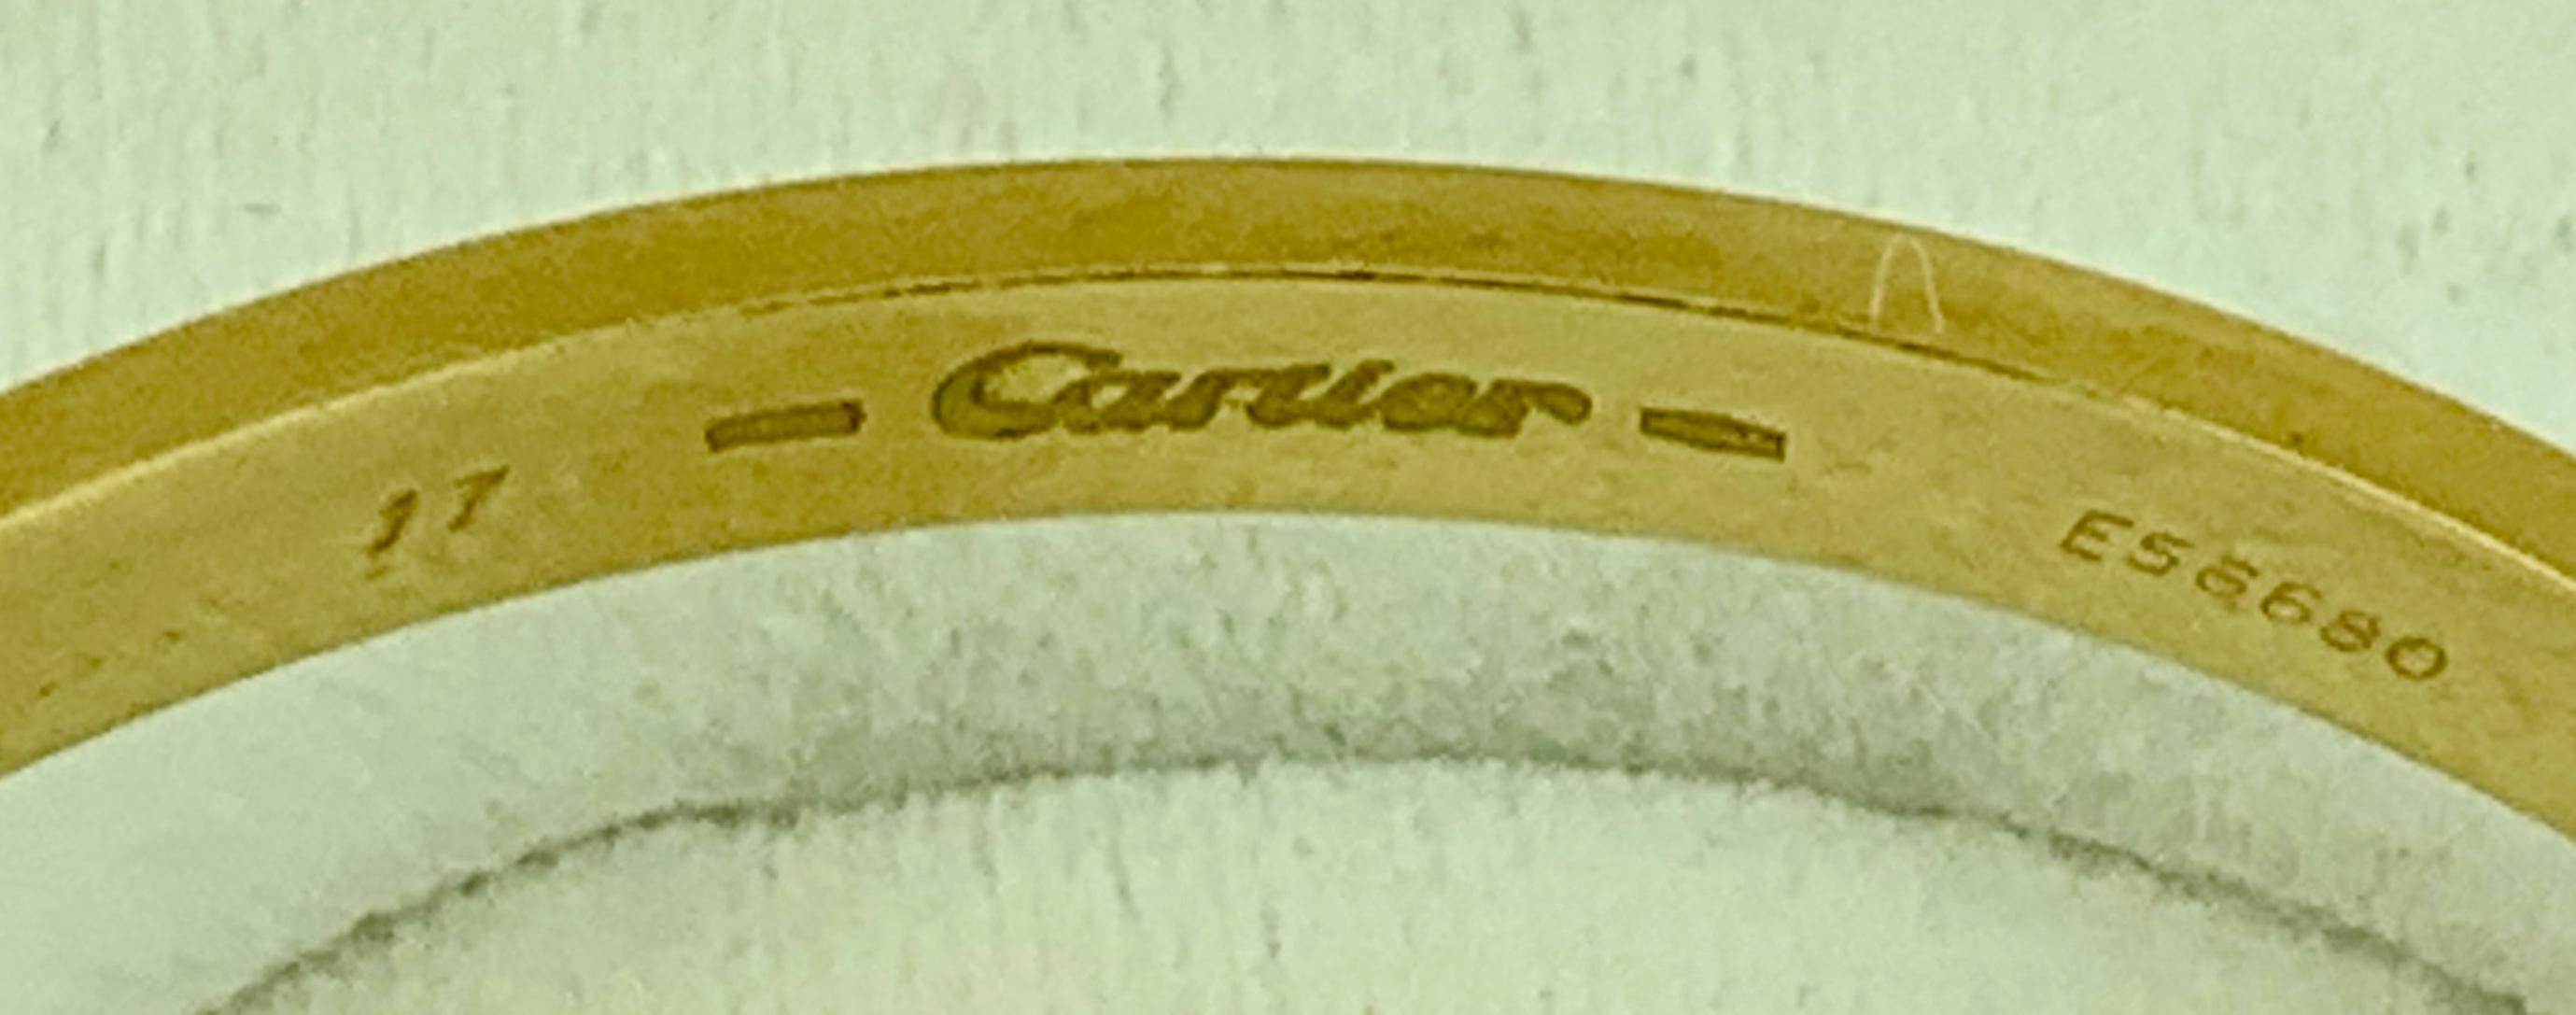 Cartier Love 18 Karat Yellow Gold Bangle Bracelet Authentic, E56680 3